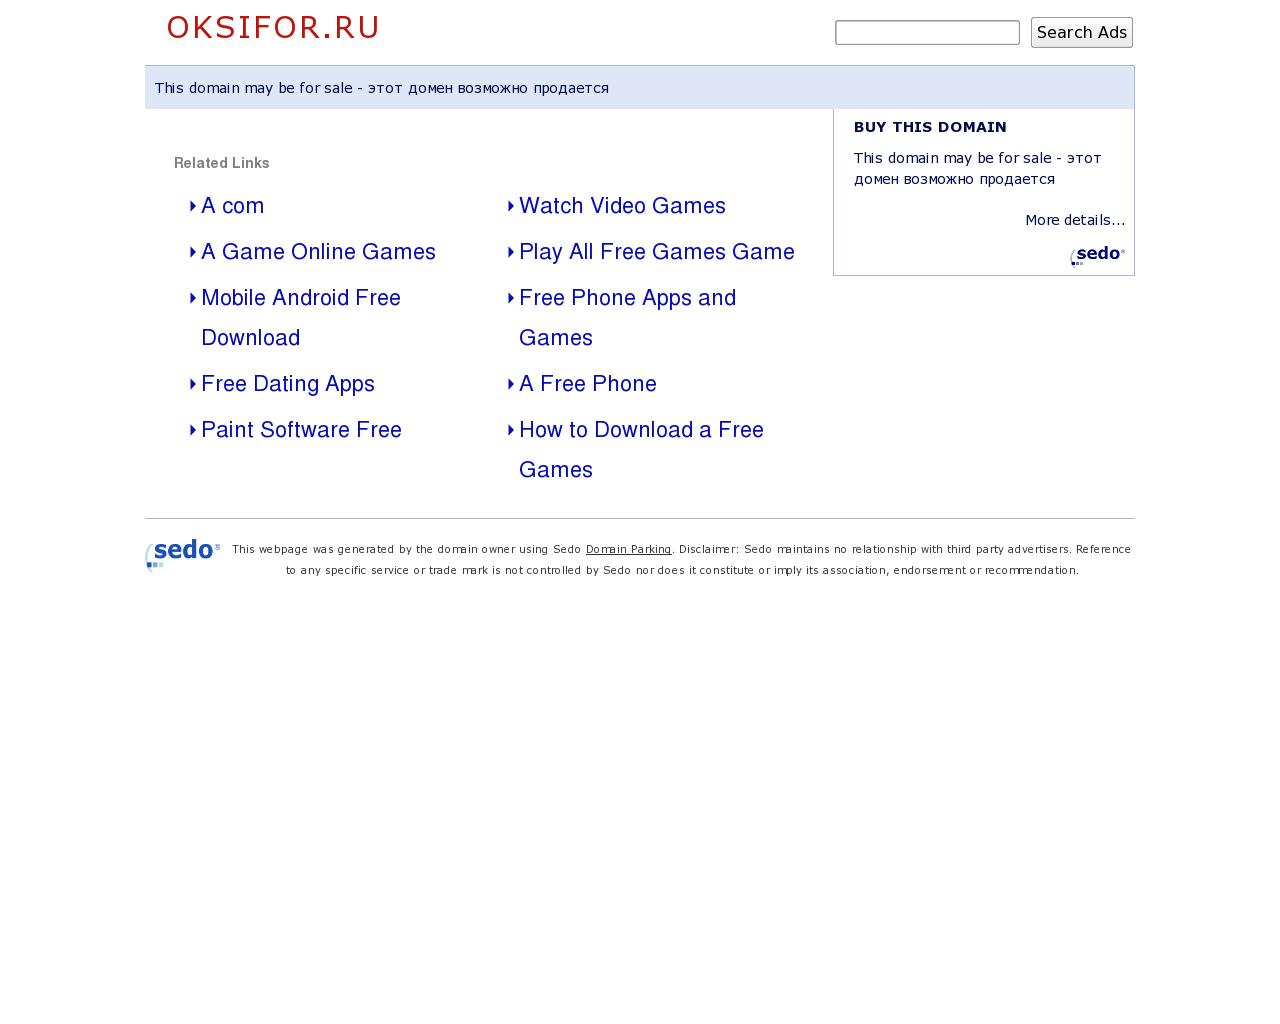 Изображение сайта oksifor.ru в разрешении 1280x1024